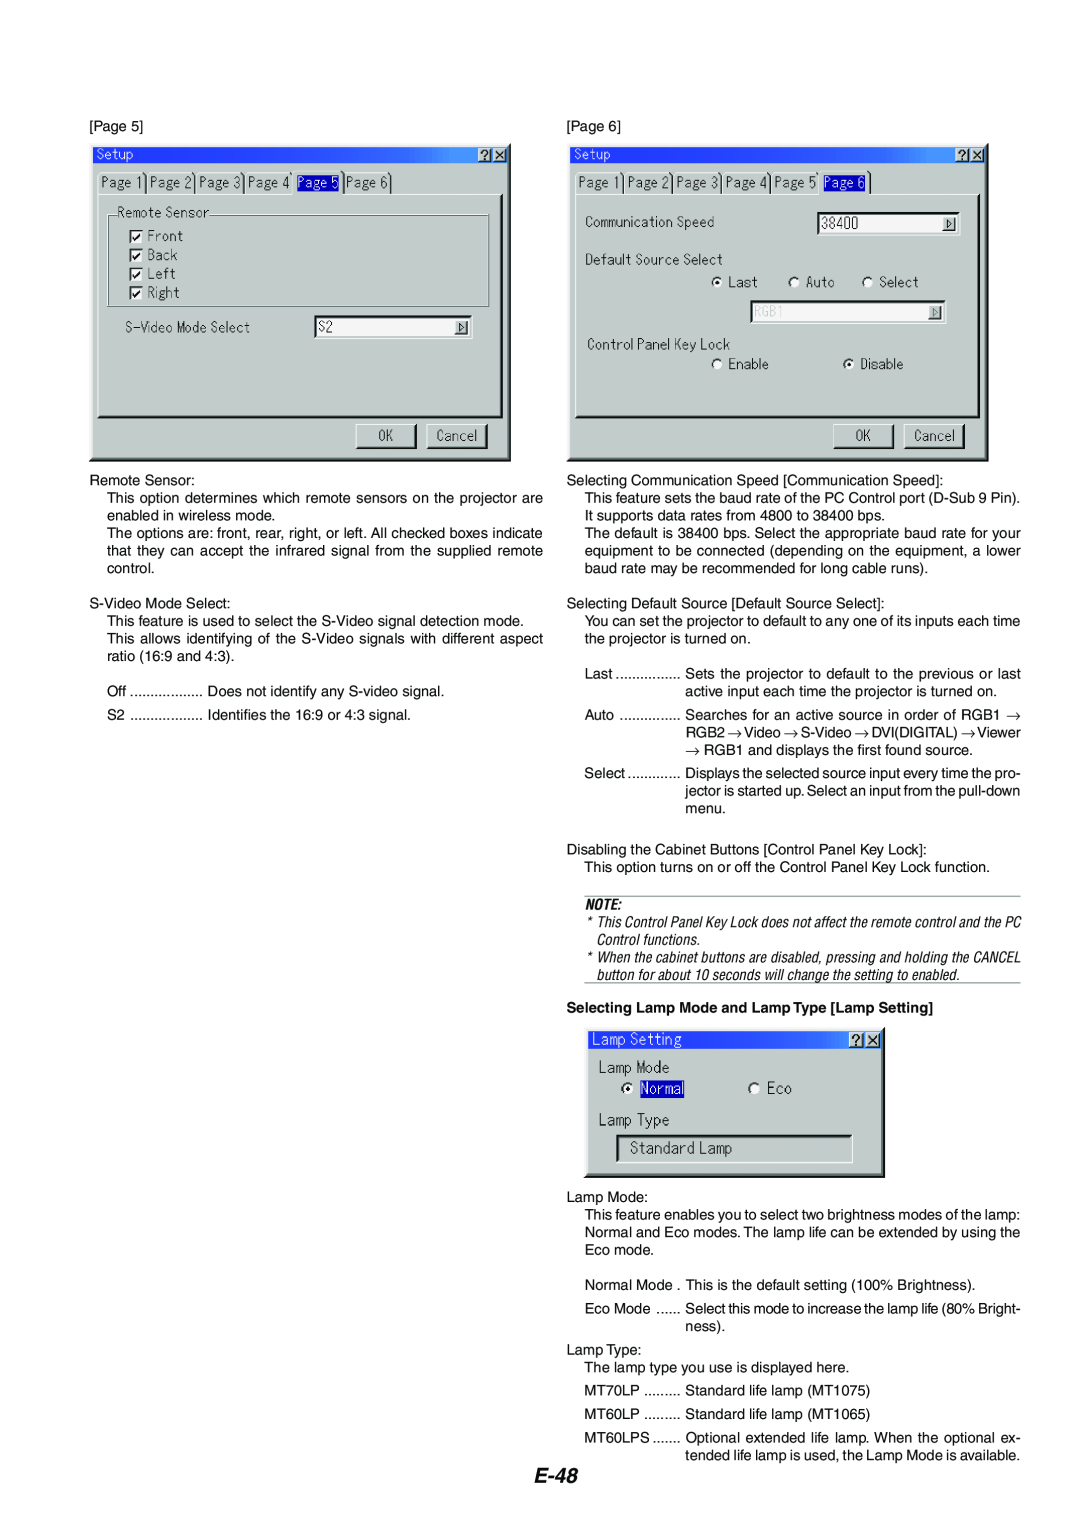 NEC MT1075/MT1065 user manual E-48, Selecting Lamp Mode and Lamp Type Lamp Setting 